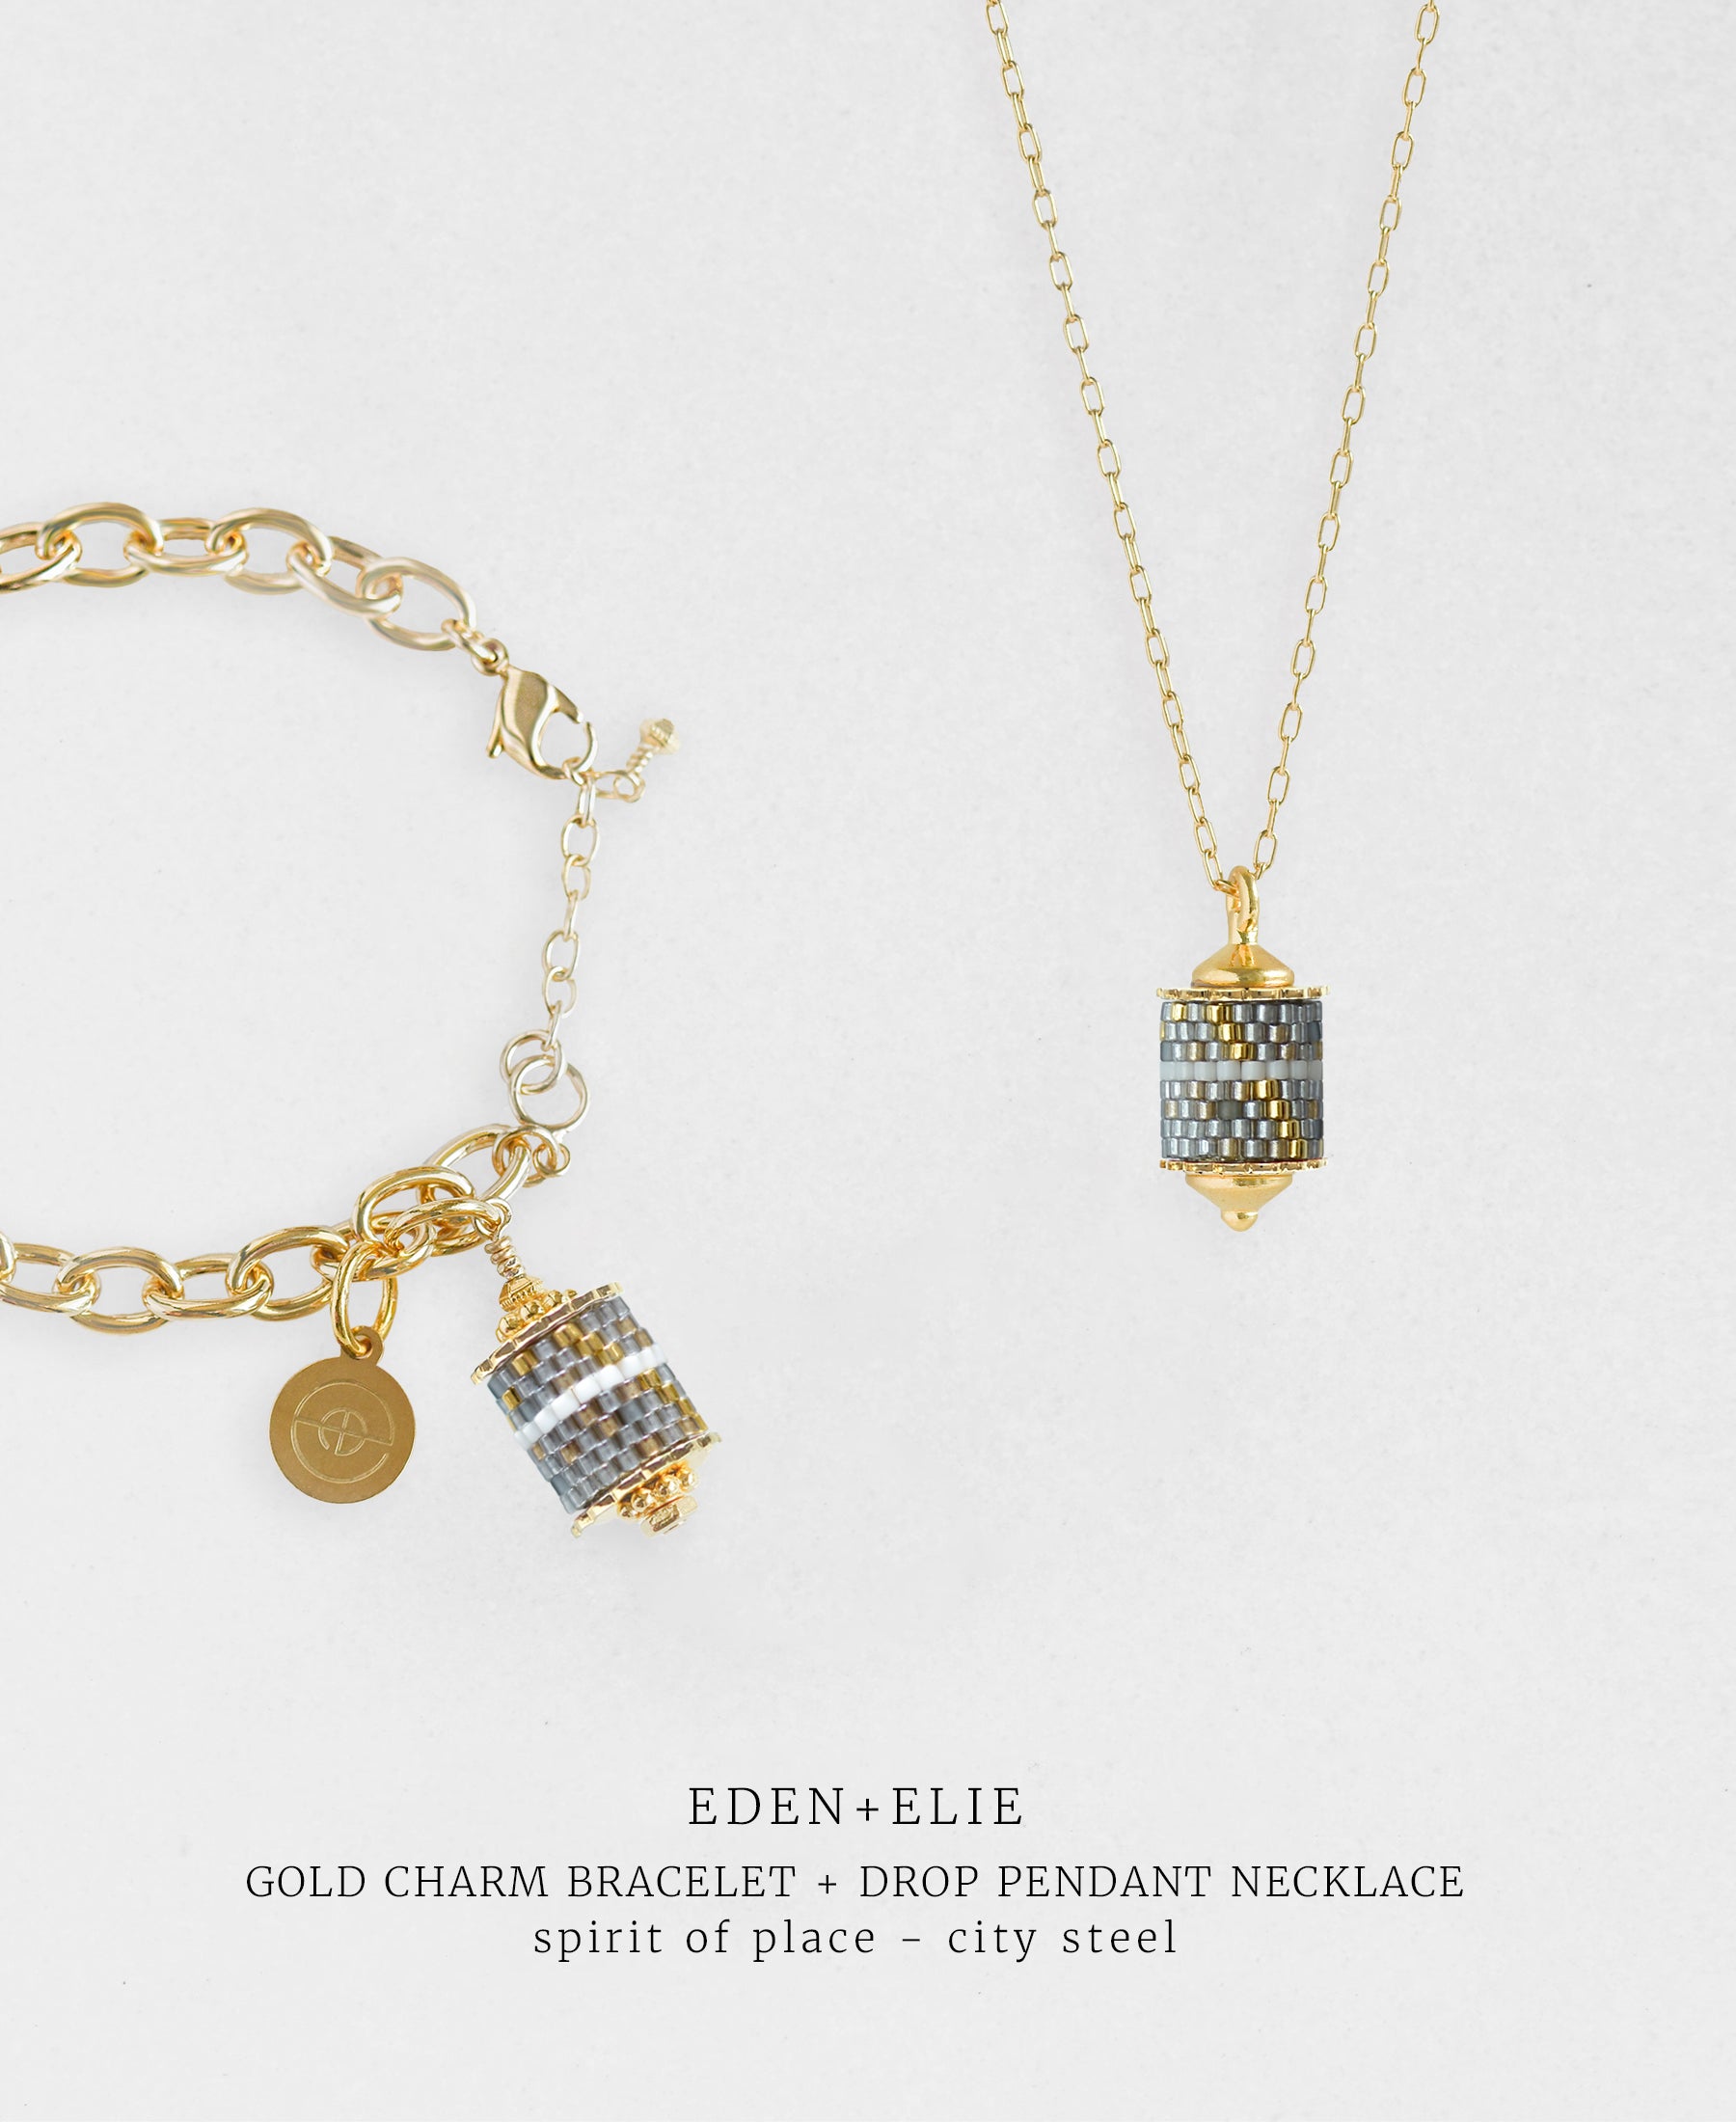 Gold Charm Bracelet + Drop Pendant Necklace Set - Spirit of Place City Steel